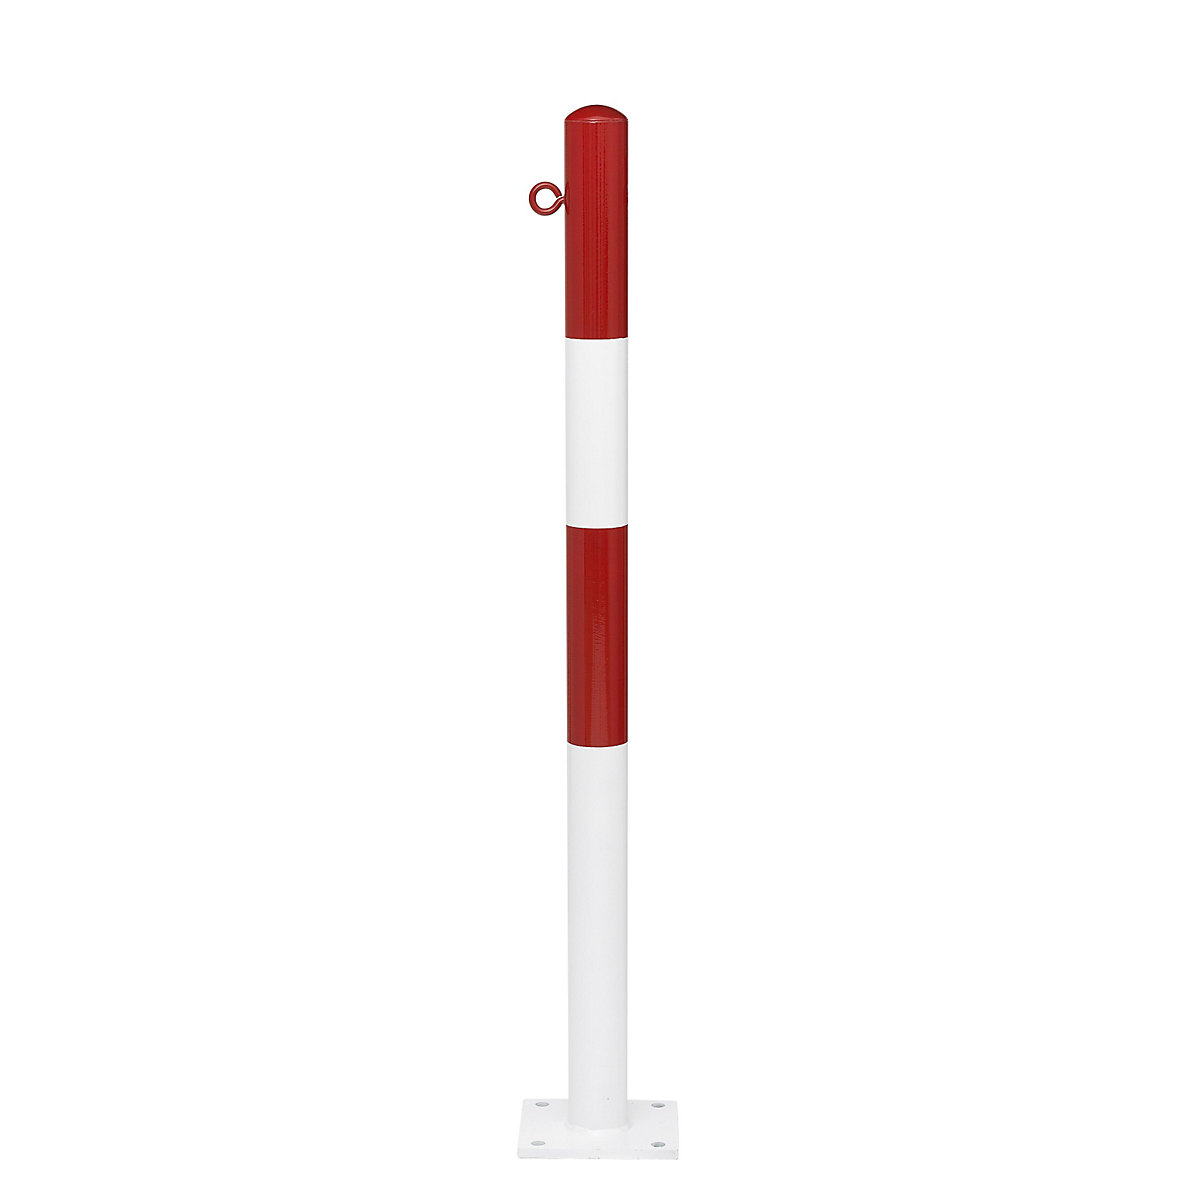 Zahradzovací stĺpik, na pripevnenie hmoždinkami, Ø 76 mm, červeno-biela plastová povrchová úprava, 1 oko-8